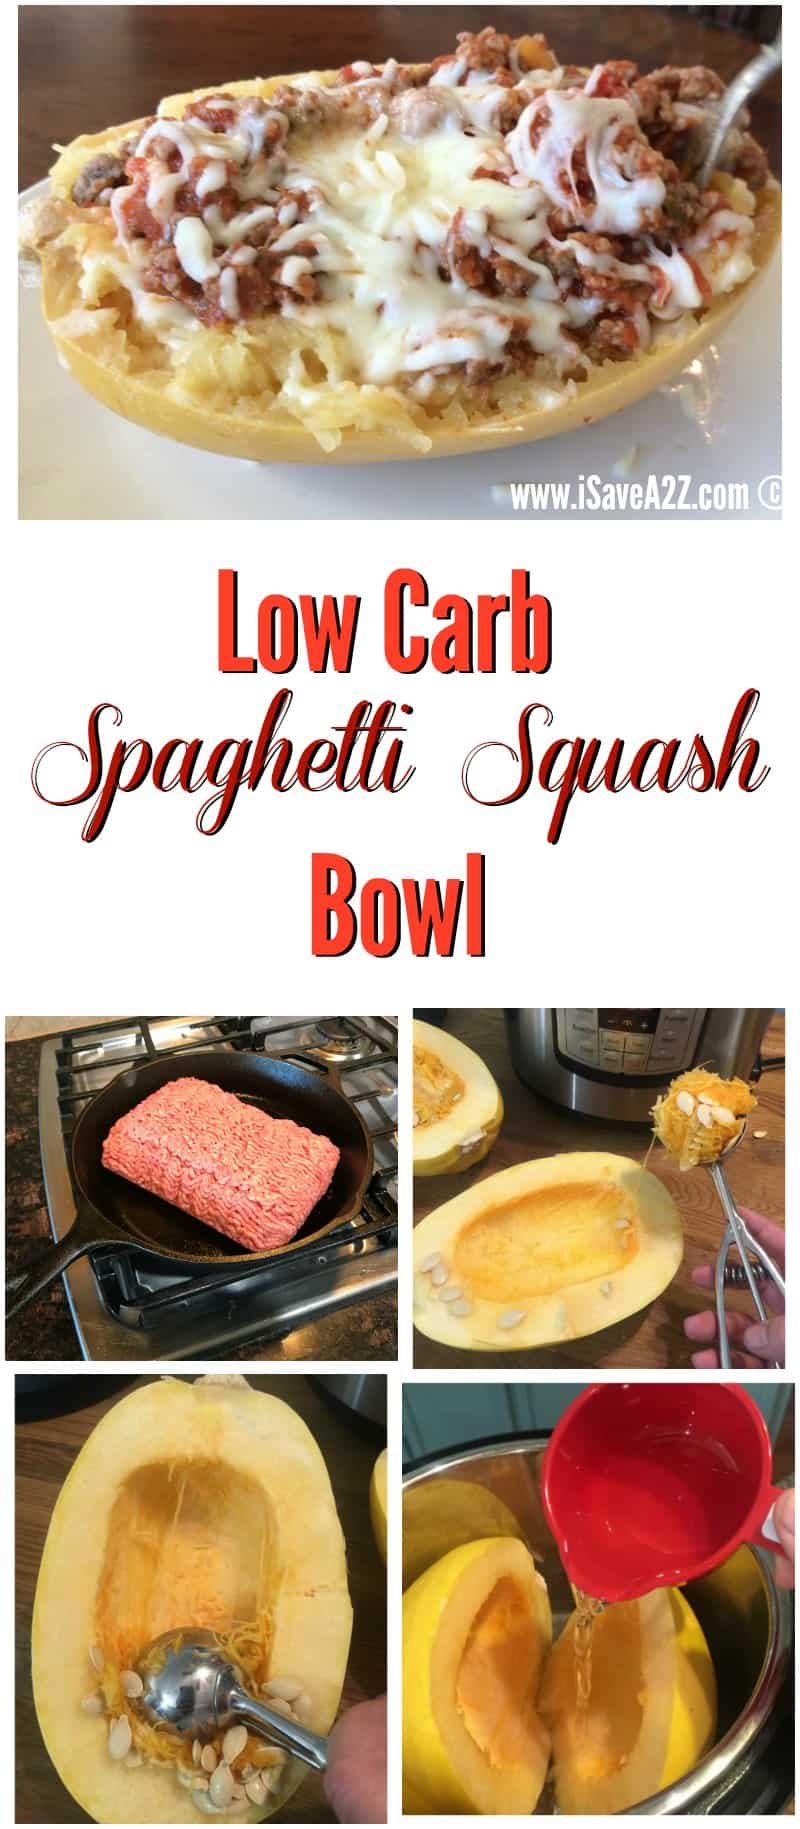 Low Carb Spaghetti Squash Bowl Recipe